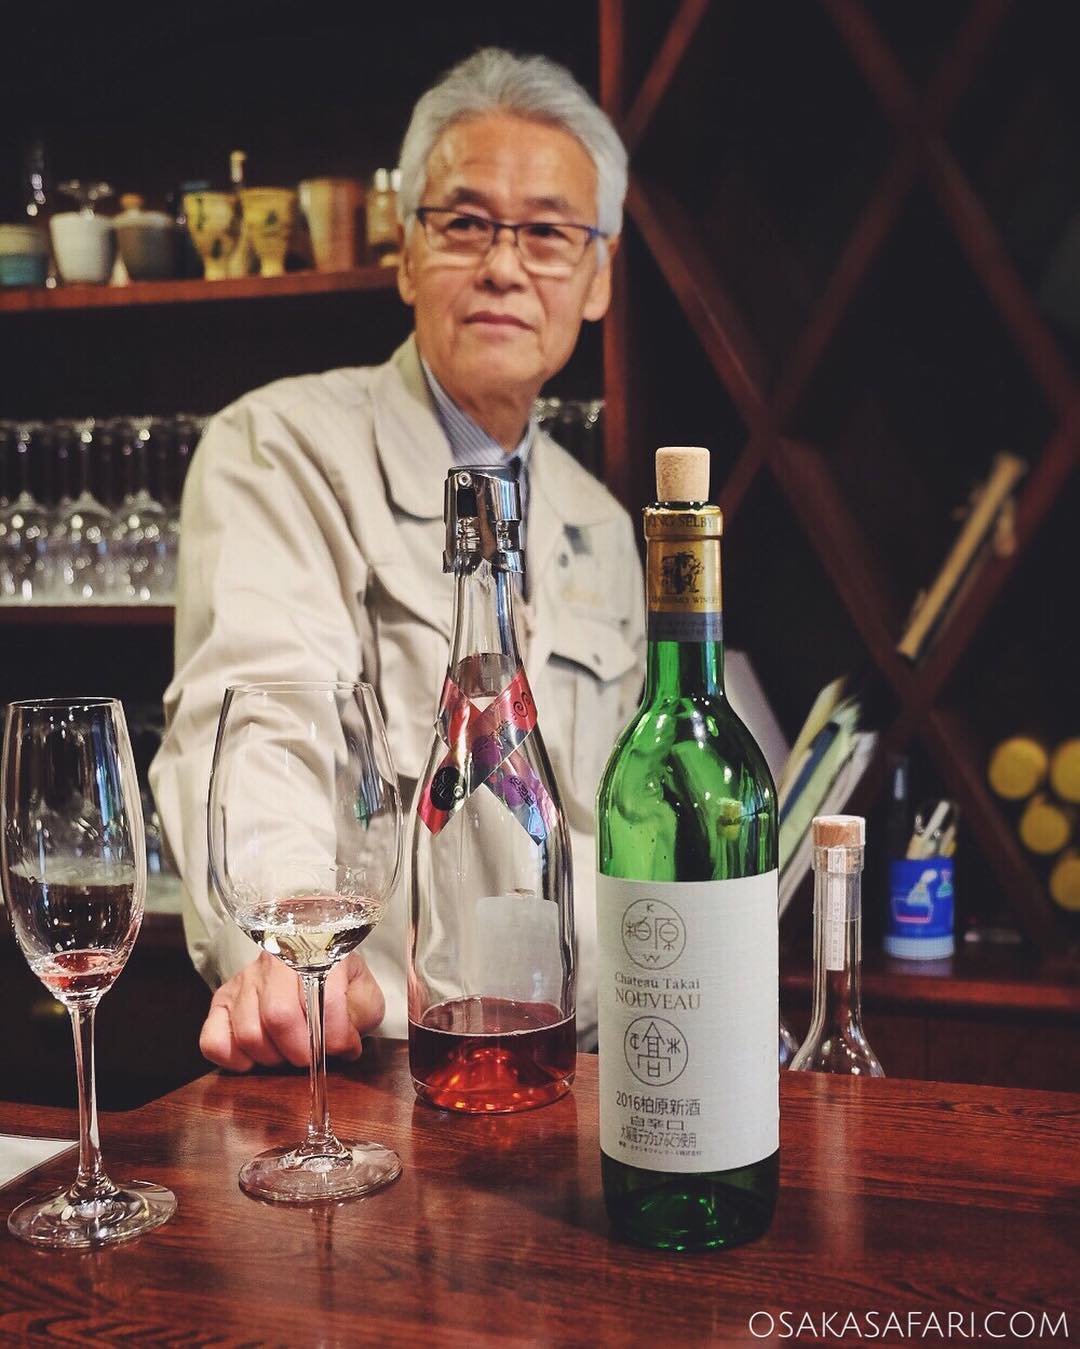 Osaka Safari du jour dans un vignoble du sud d'Osaka en compagnie de Takai-san, 4e génération de vigneron dont la passion est contagieuse. Une superbe expérience !

#osaka #osakawine #japanwine #vinjaponais #vin #柏原ワイン #カタシモワイナリー #大阪ワイン